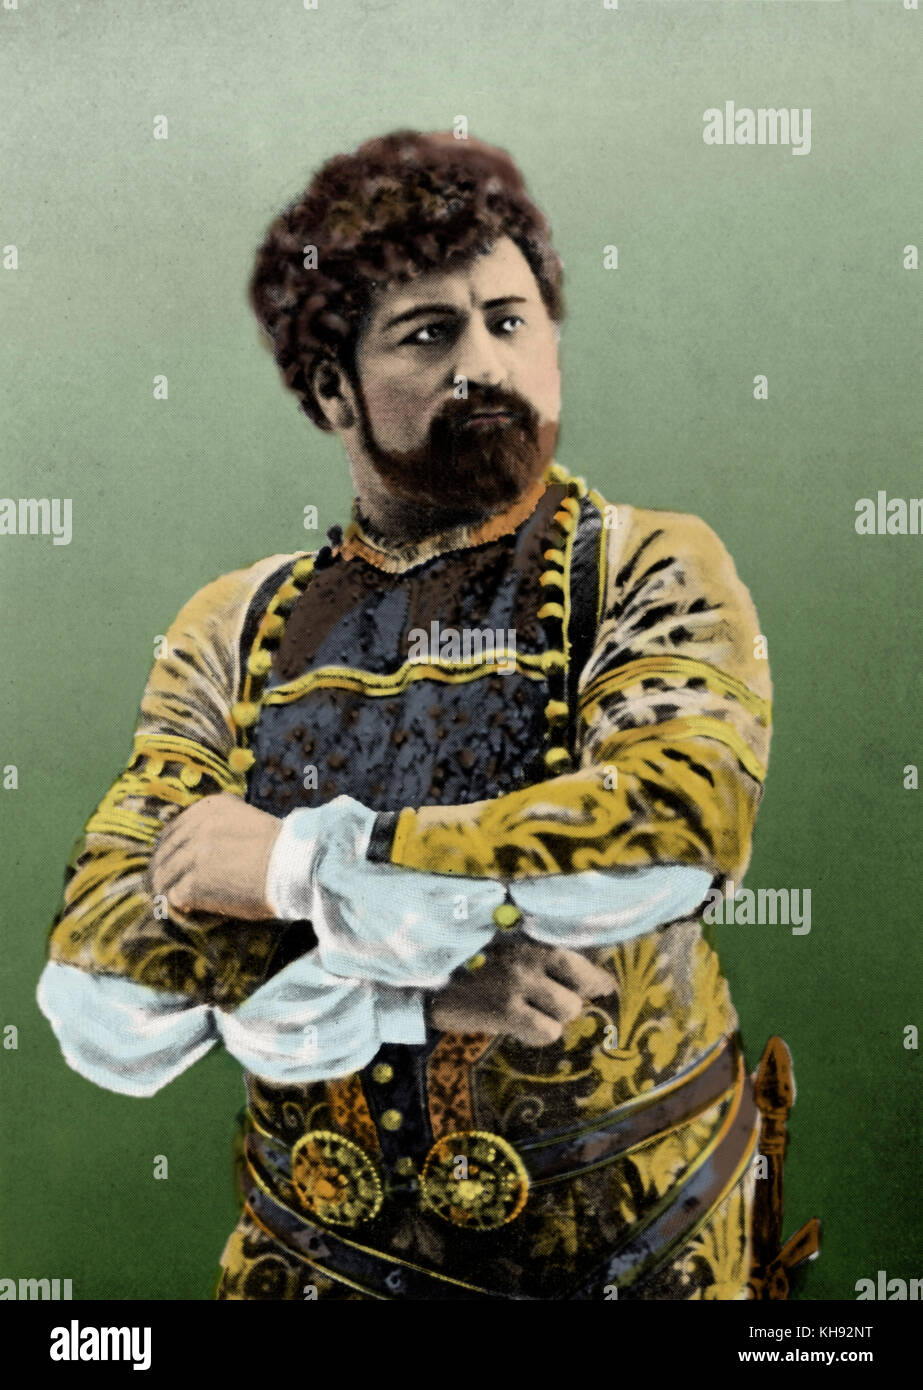 Francesco TAMAGNO, as Otello in Verdi 's opera  'Otello' Italian tenor (1850-1905) Stock Photo